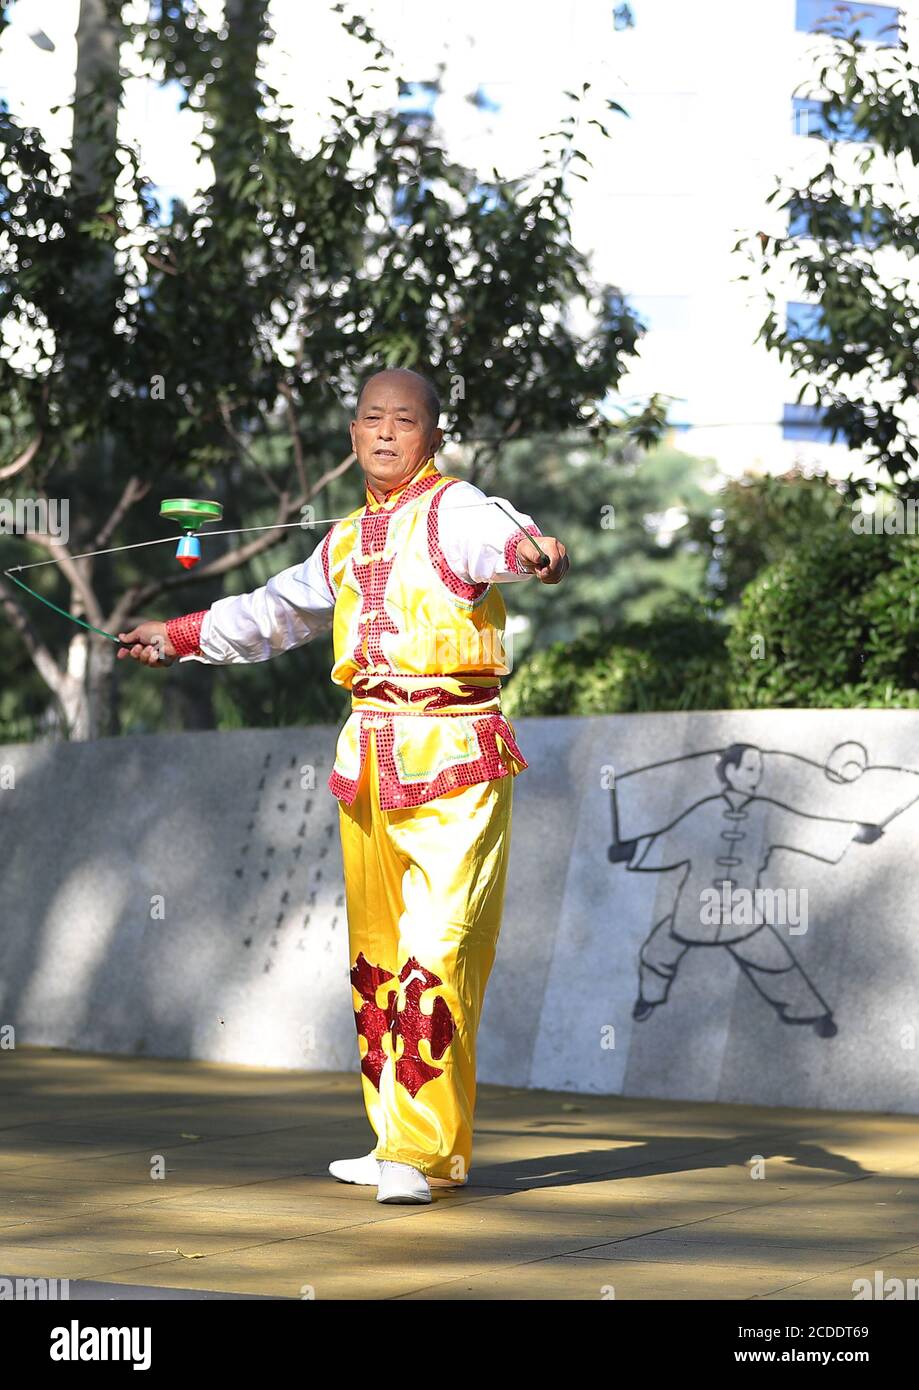 (200828) -- PEKING, 28. August 2020 (Xinhua) -- Dong Shulin spielt Diabolo auf dem Wukesong Diabolo Kulturplatz in Peking, Hauptstadt von China, 11. August 2020. Dong Shulin, 66, lebt mit seiner Frau Mei Yongpei und seiner 9-jährigen Enkelin Dong Yutong in Peking. Dong Shulin begann 2003 Diabolo zu spielen und jetzt spielt die ganze Familie gerne dieses traditionelle Volksspiel, in dem man einen Spinning Top werfen und fangen kann, indem man eine Schnur an zwei Stöcken befestigt. In Dong Shulins Wohnung wurden über 70 Diabolos ringsum platziert. Einige der Diabolos wurden gekauft und andere waren selbst gemacht, besonders Stockfoto